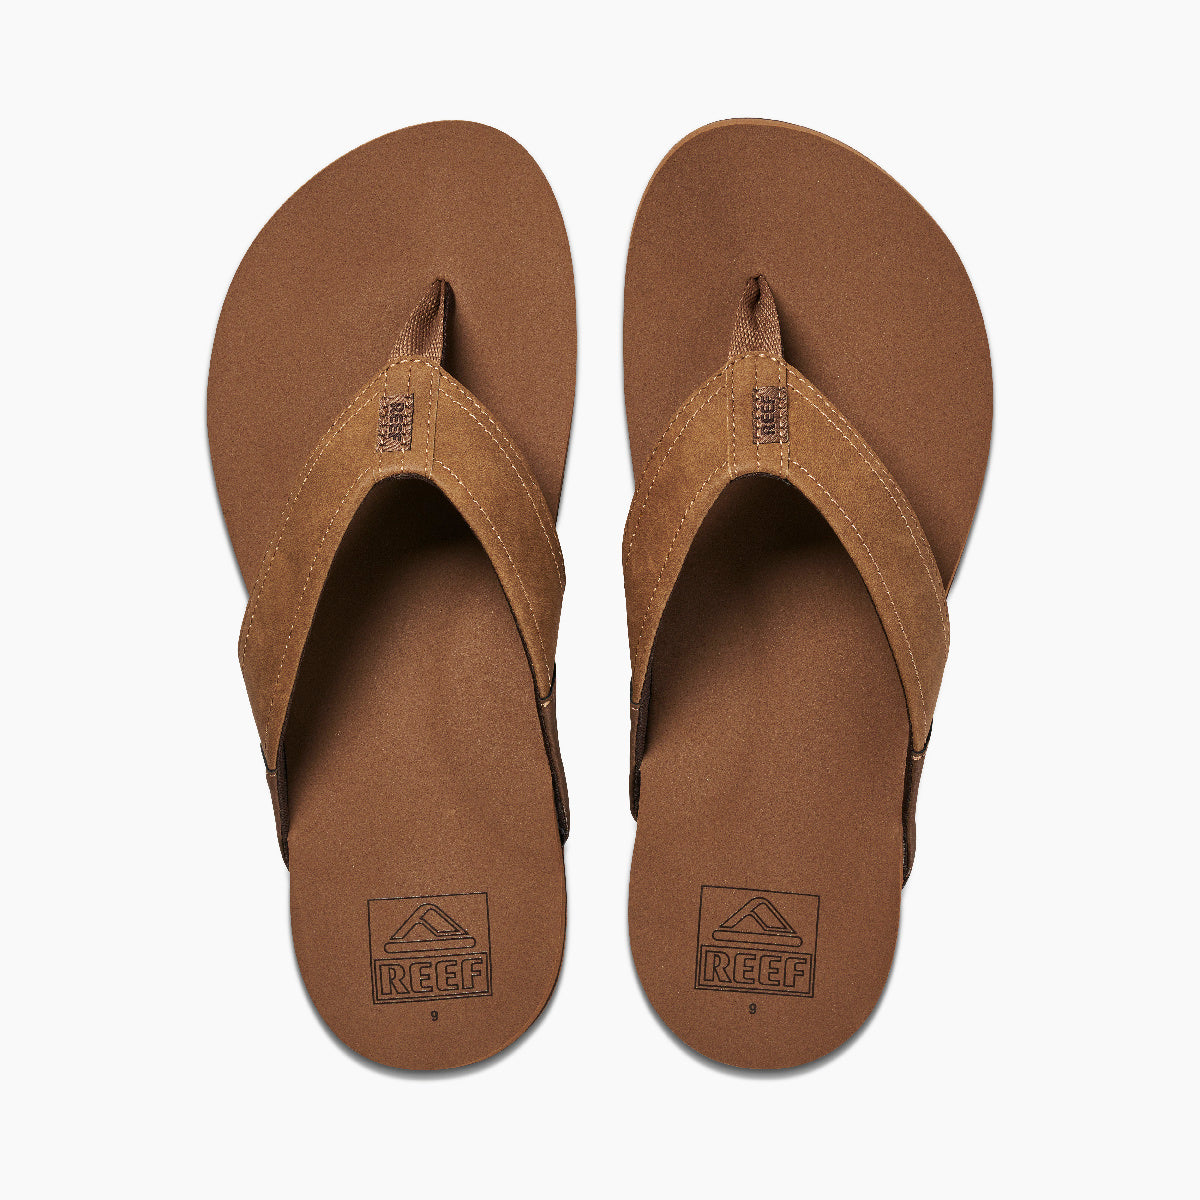 Reef Newport Men's Sandals